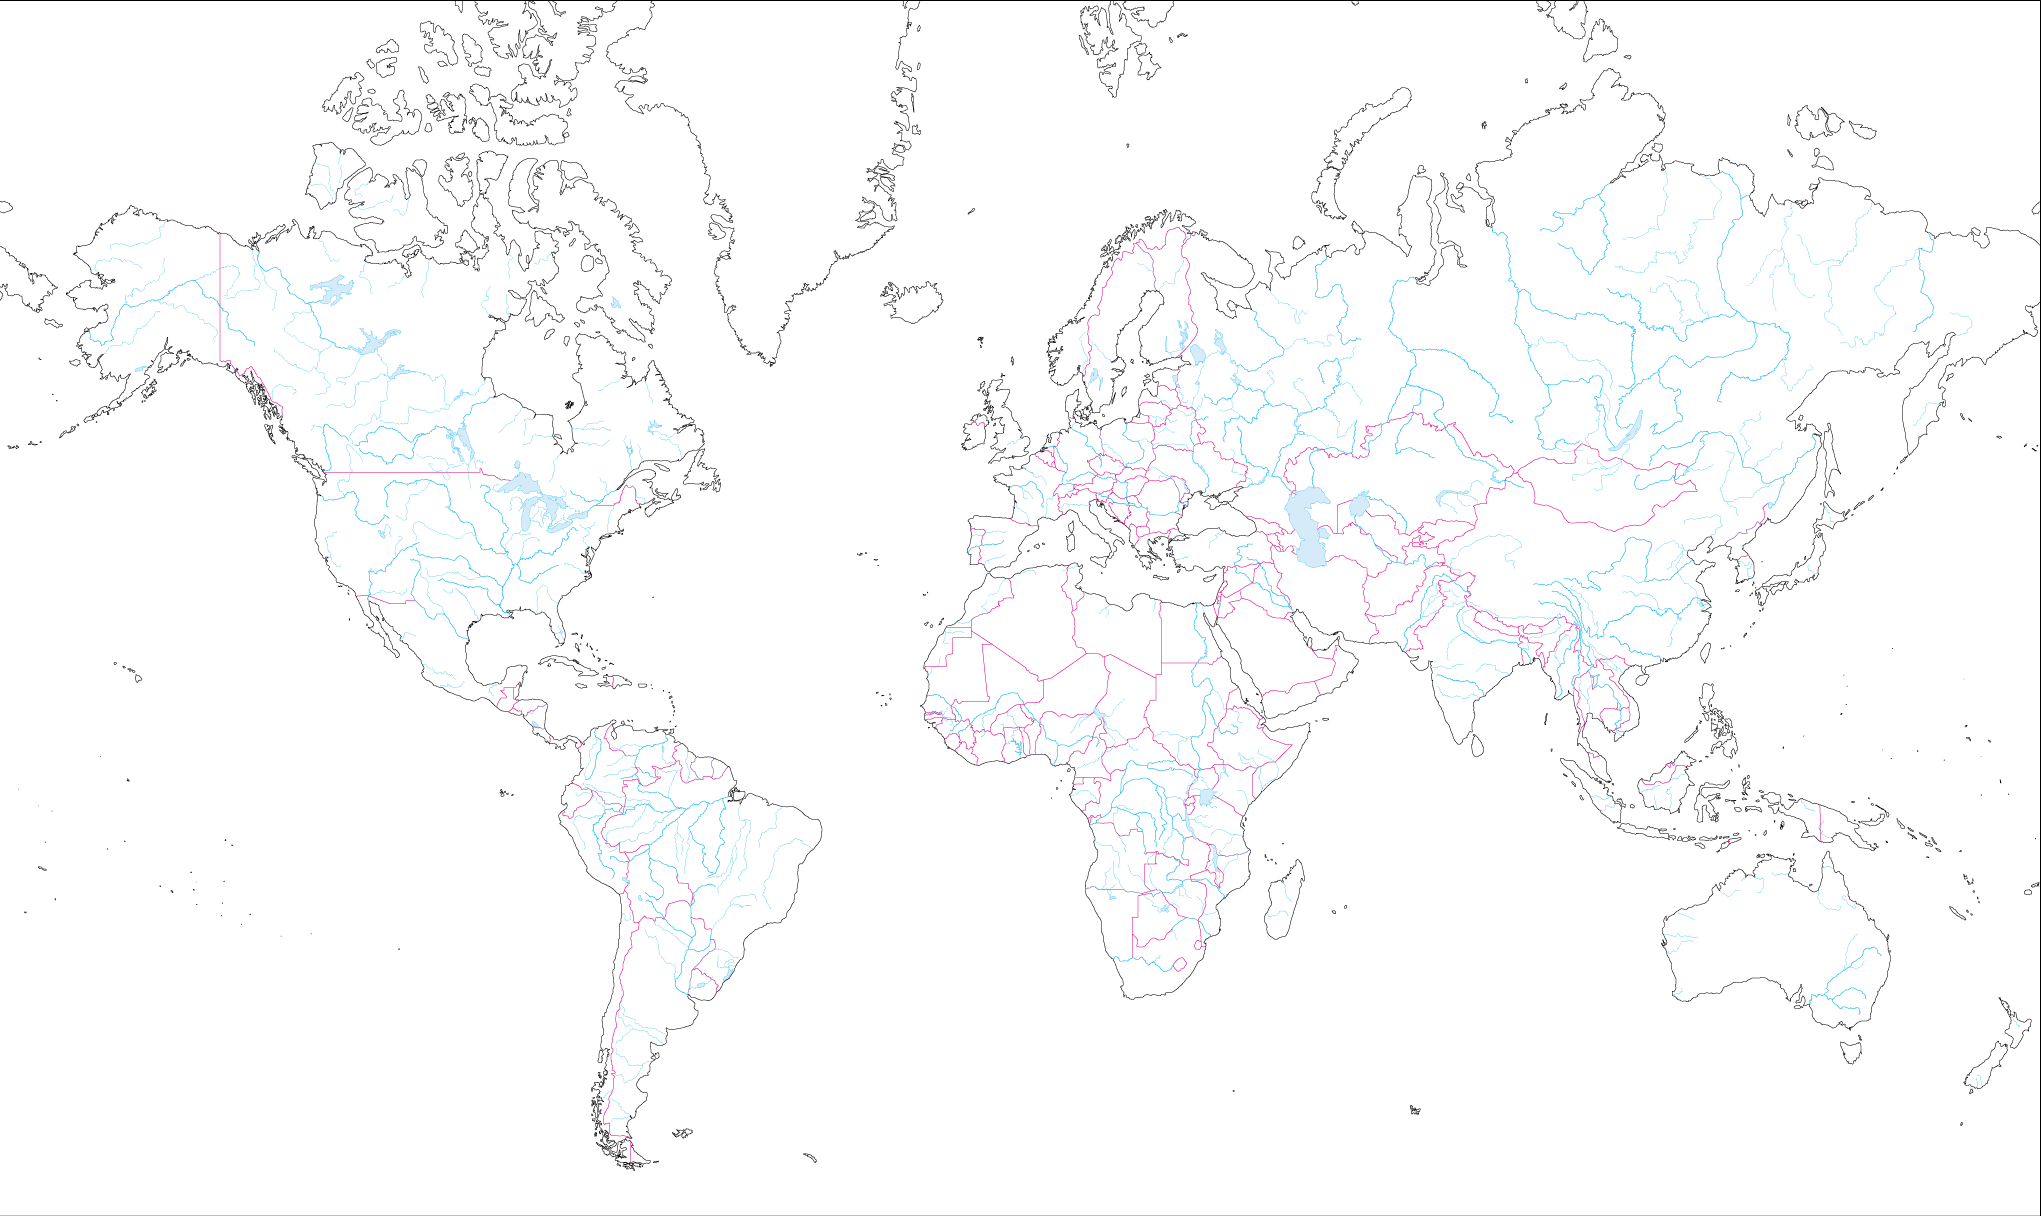 Japan Image 世界地図 ヨーロッパ 白地図